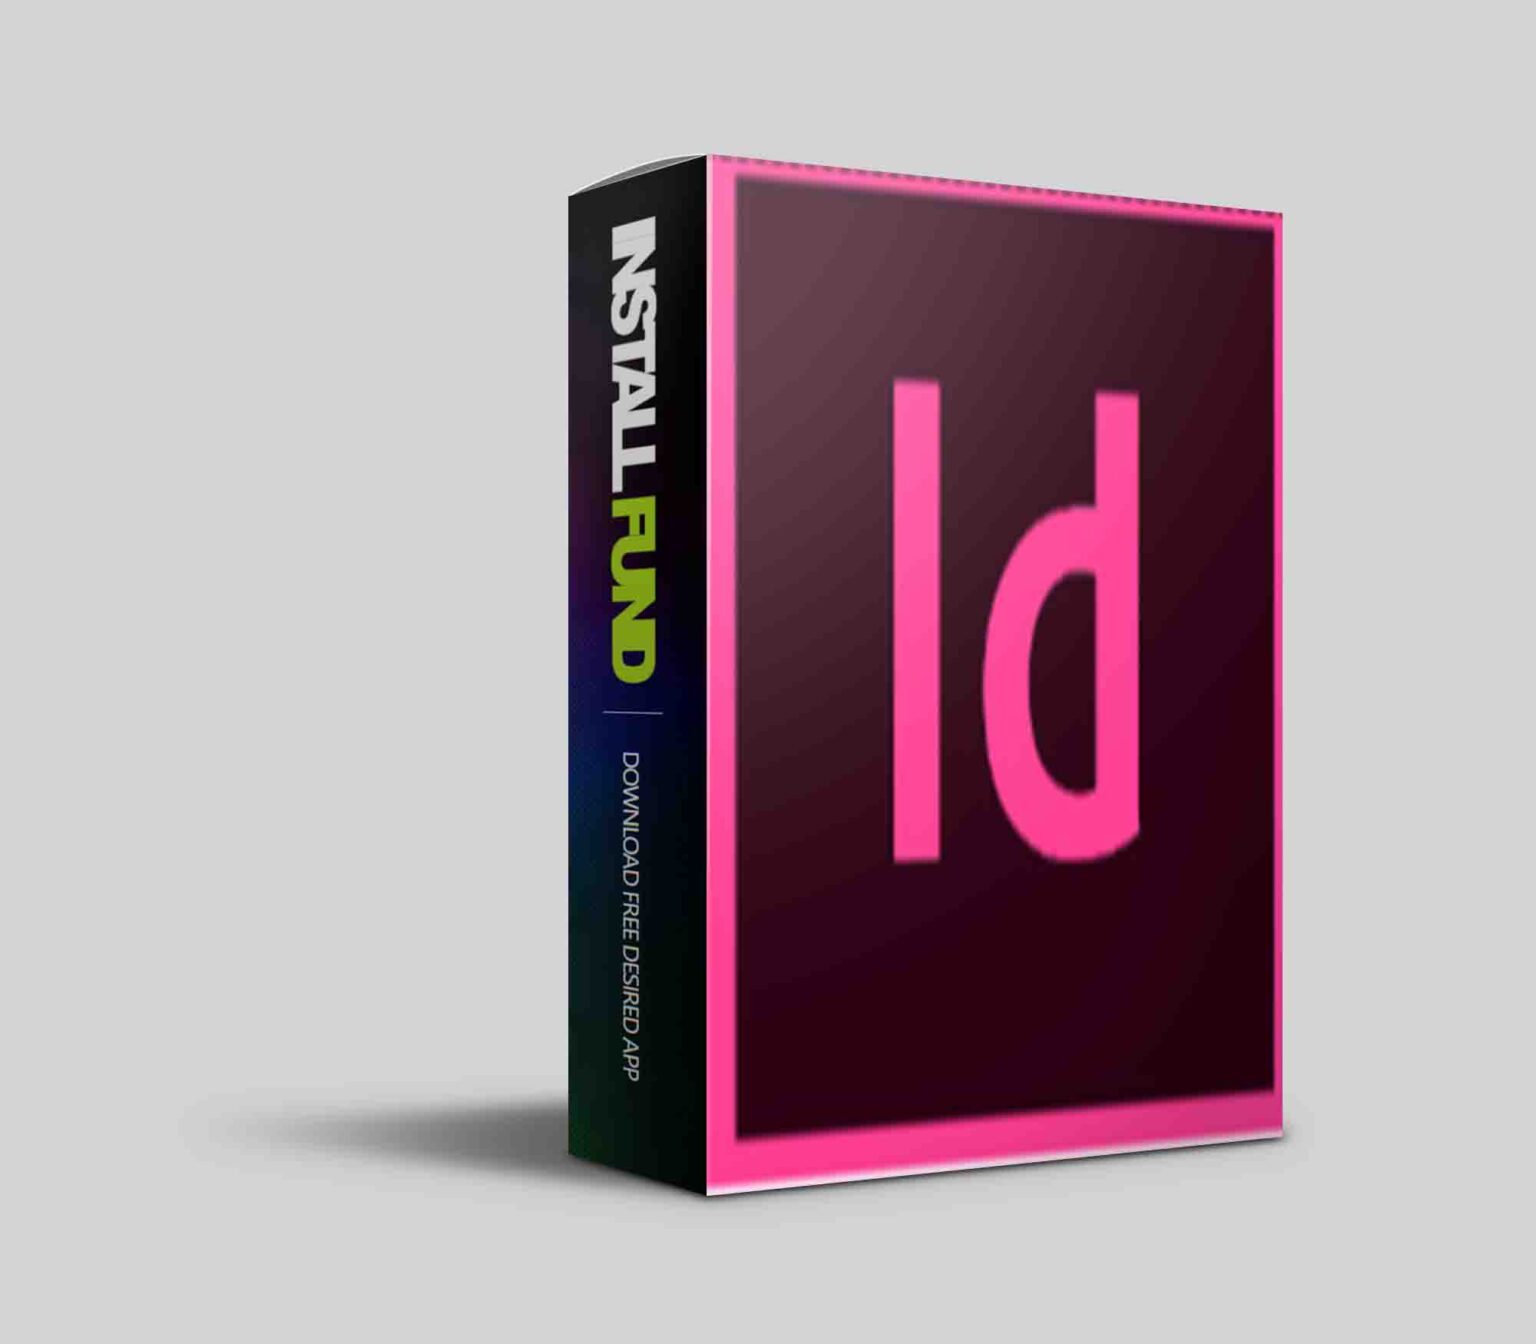 Adobe InDesign 2023 v18.5.0.57 for windows download